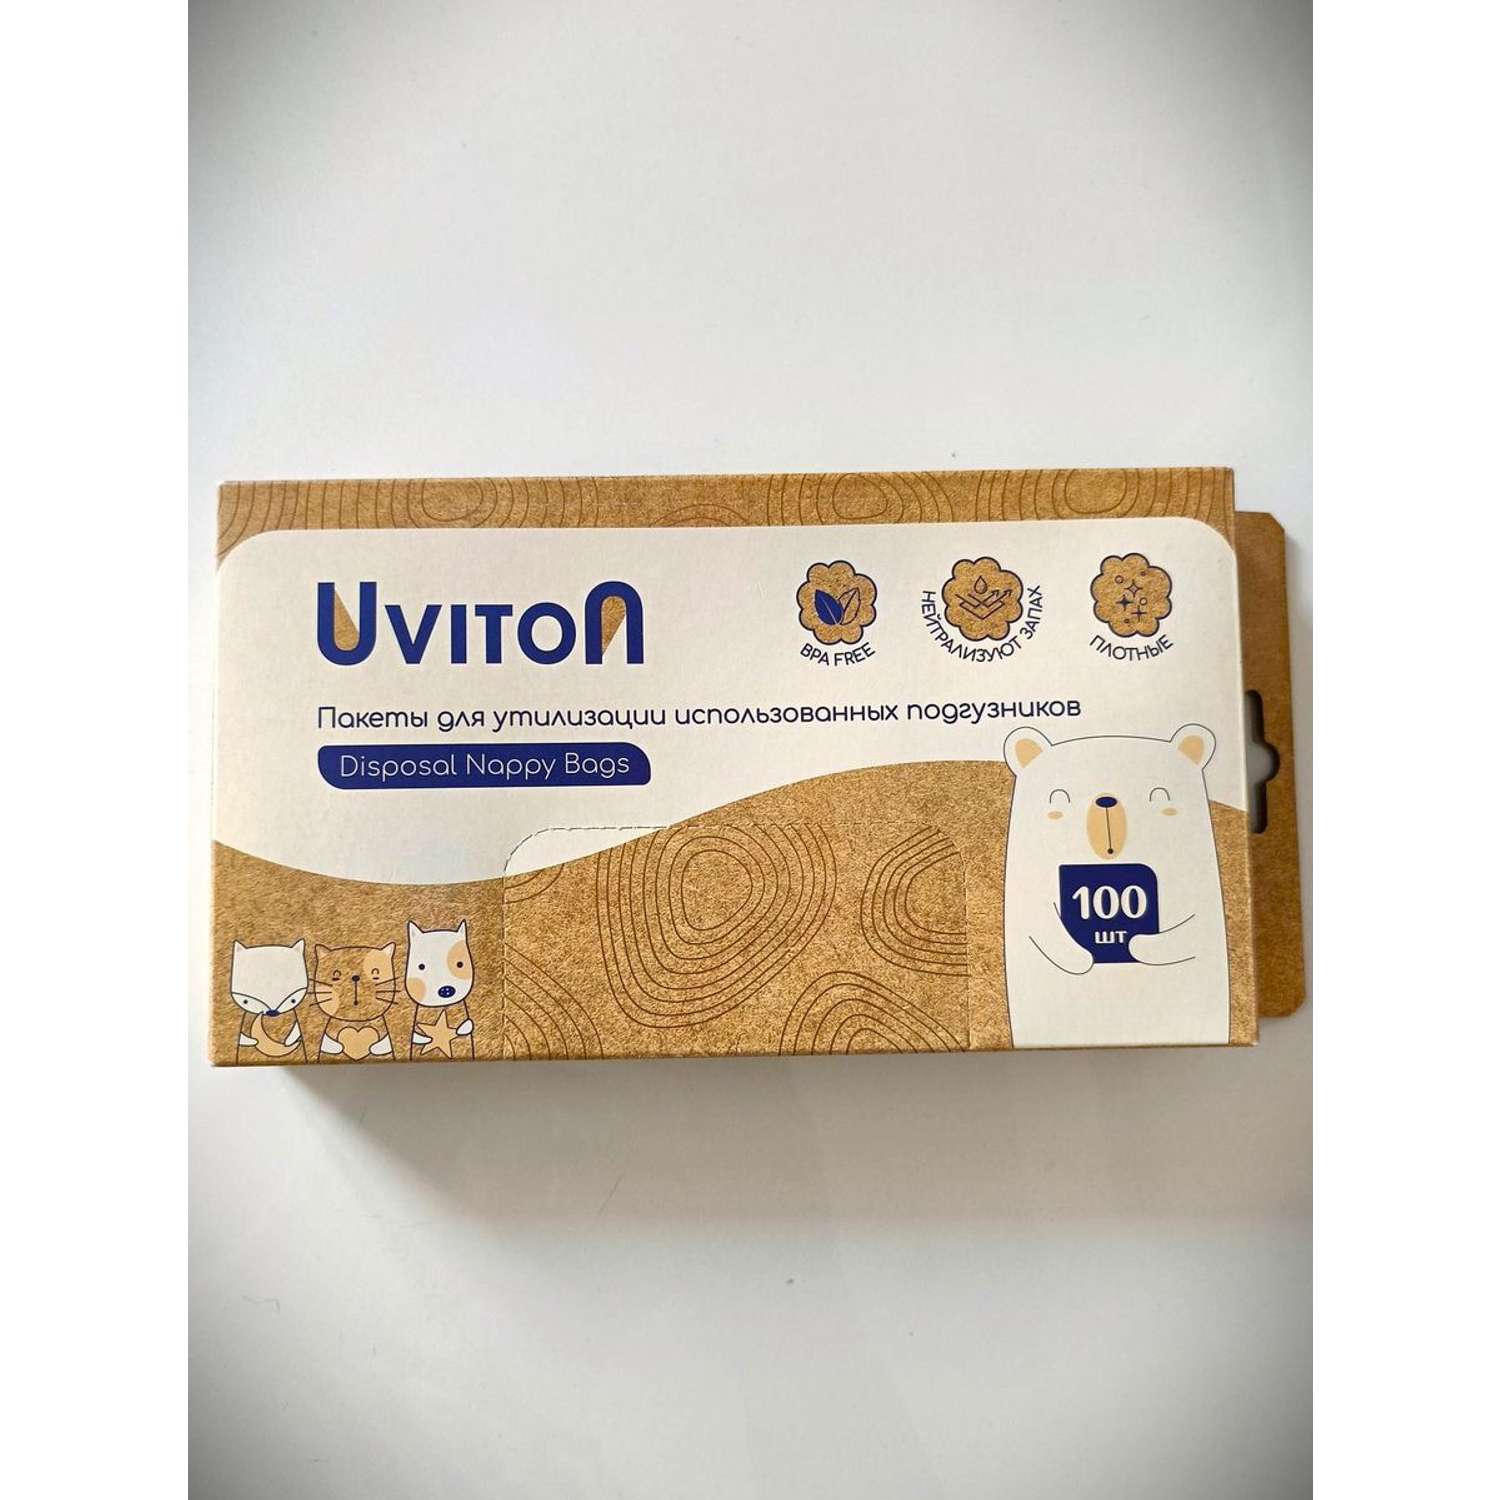 Пакеты для утилизации Uviton использованных подгузников 100 шт - фото 2